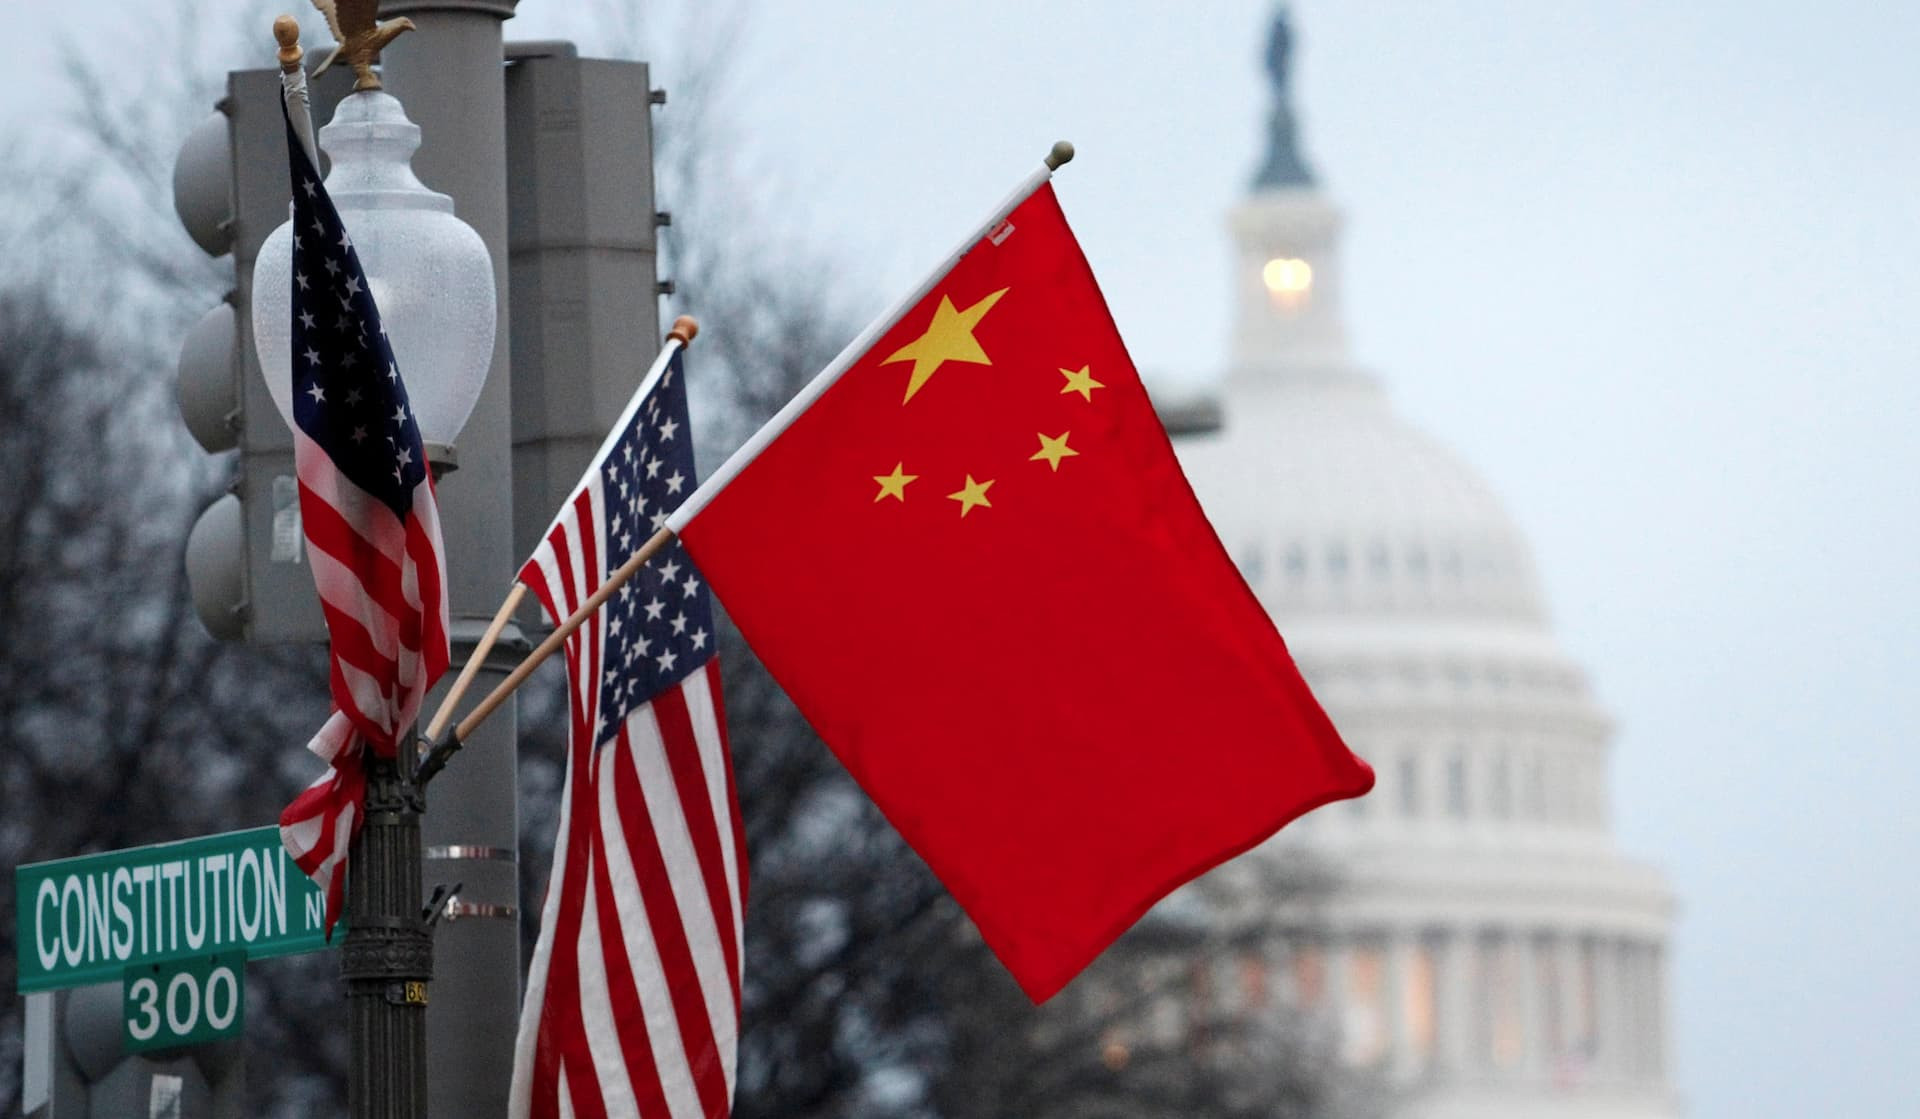 ԱՄՆ-ը կպահպանի Չինաստանի հետ շփման խողովակները՝ էսկալացիայից խուսափելու համար. Բլինքեն